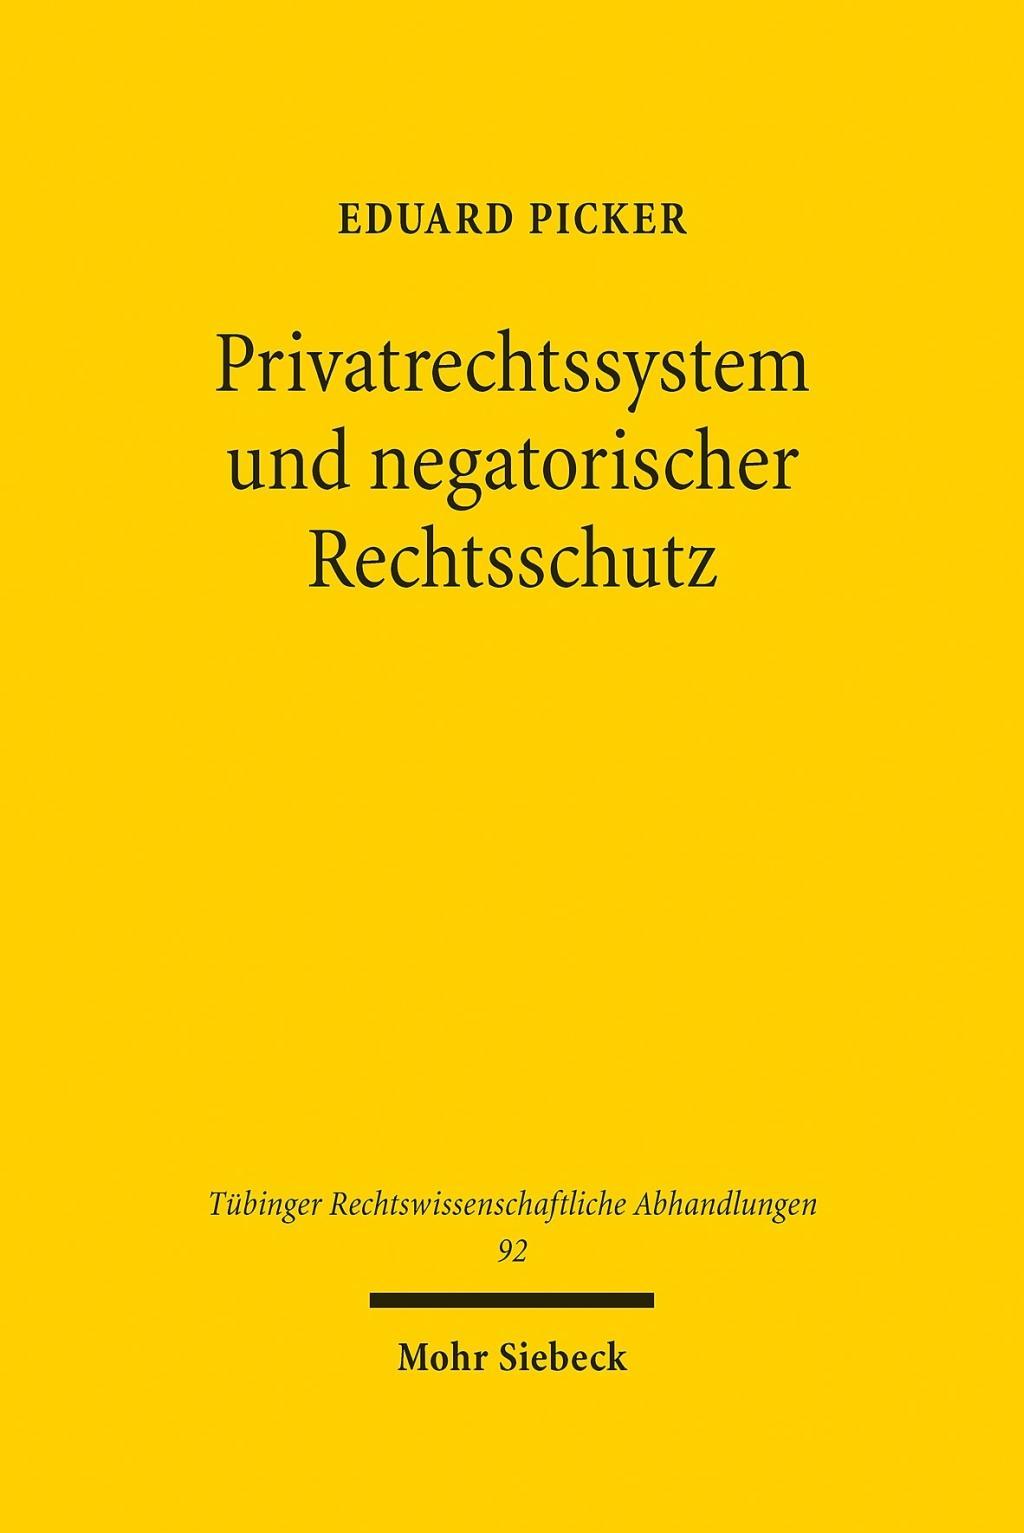 Book Privatrechtssystem und negatorischer Rechtsschutz Eduard Picker